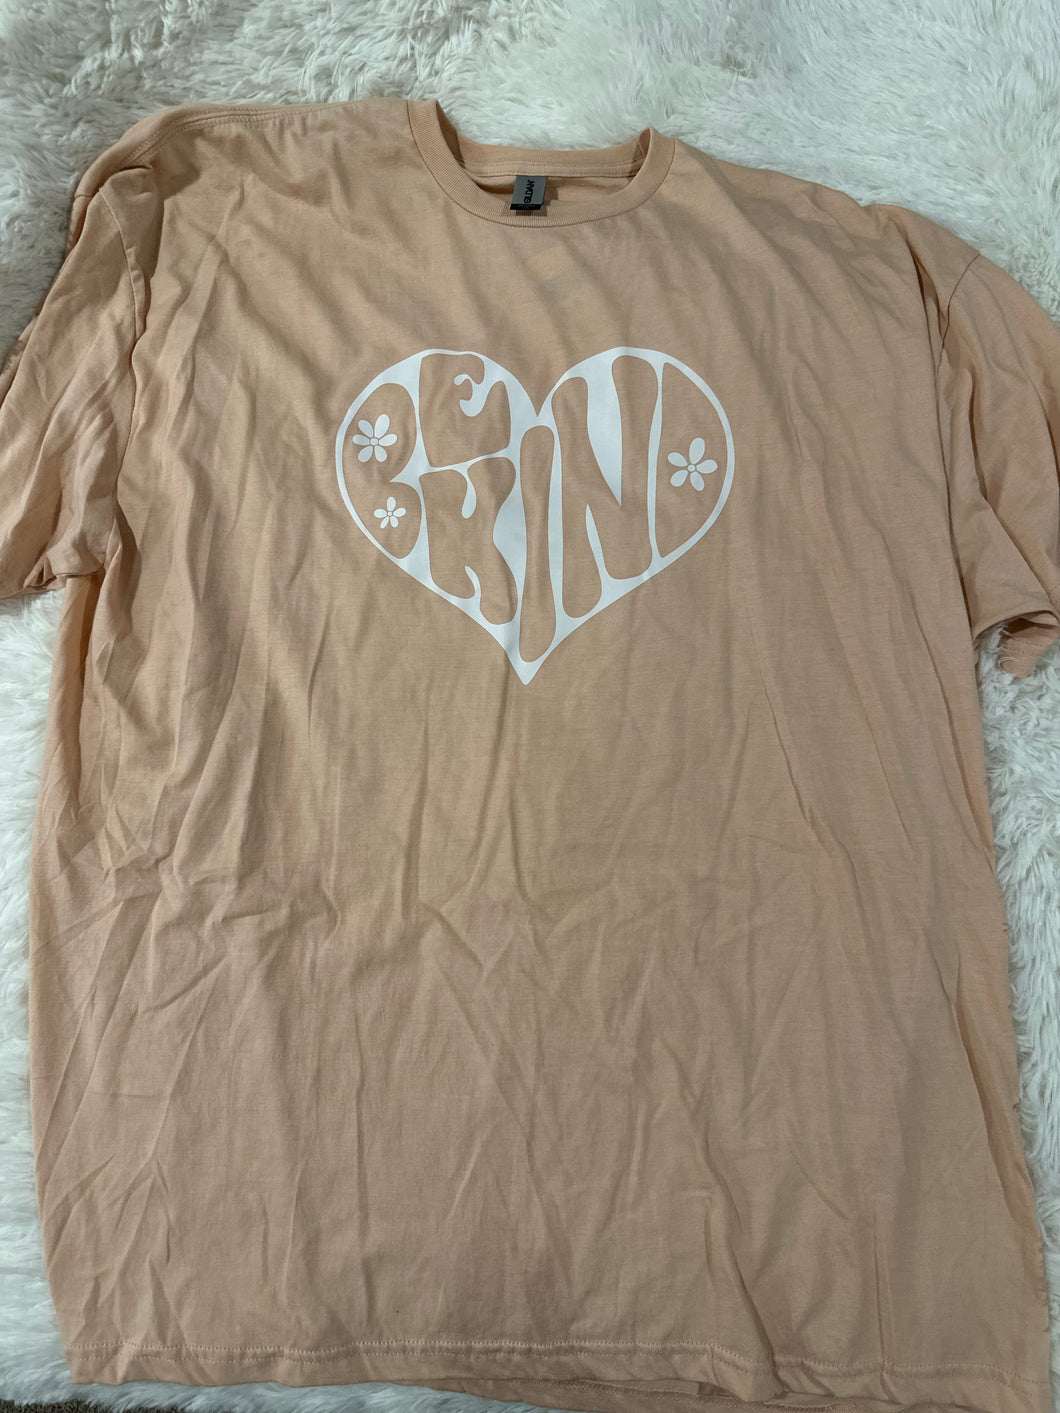 Be Kind T-Shirt Peach - 3XL